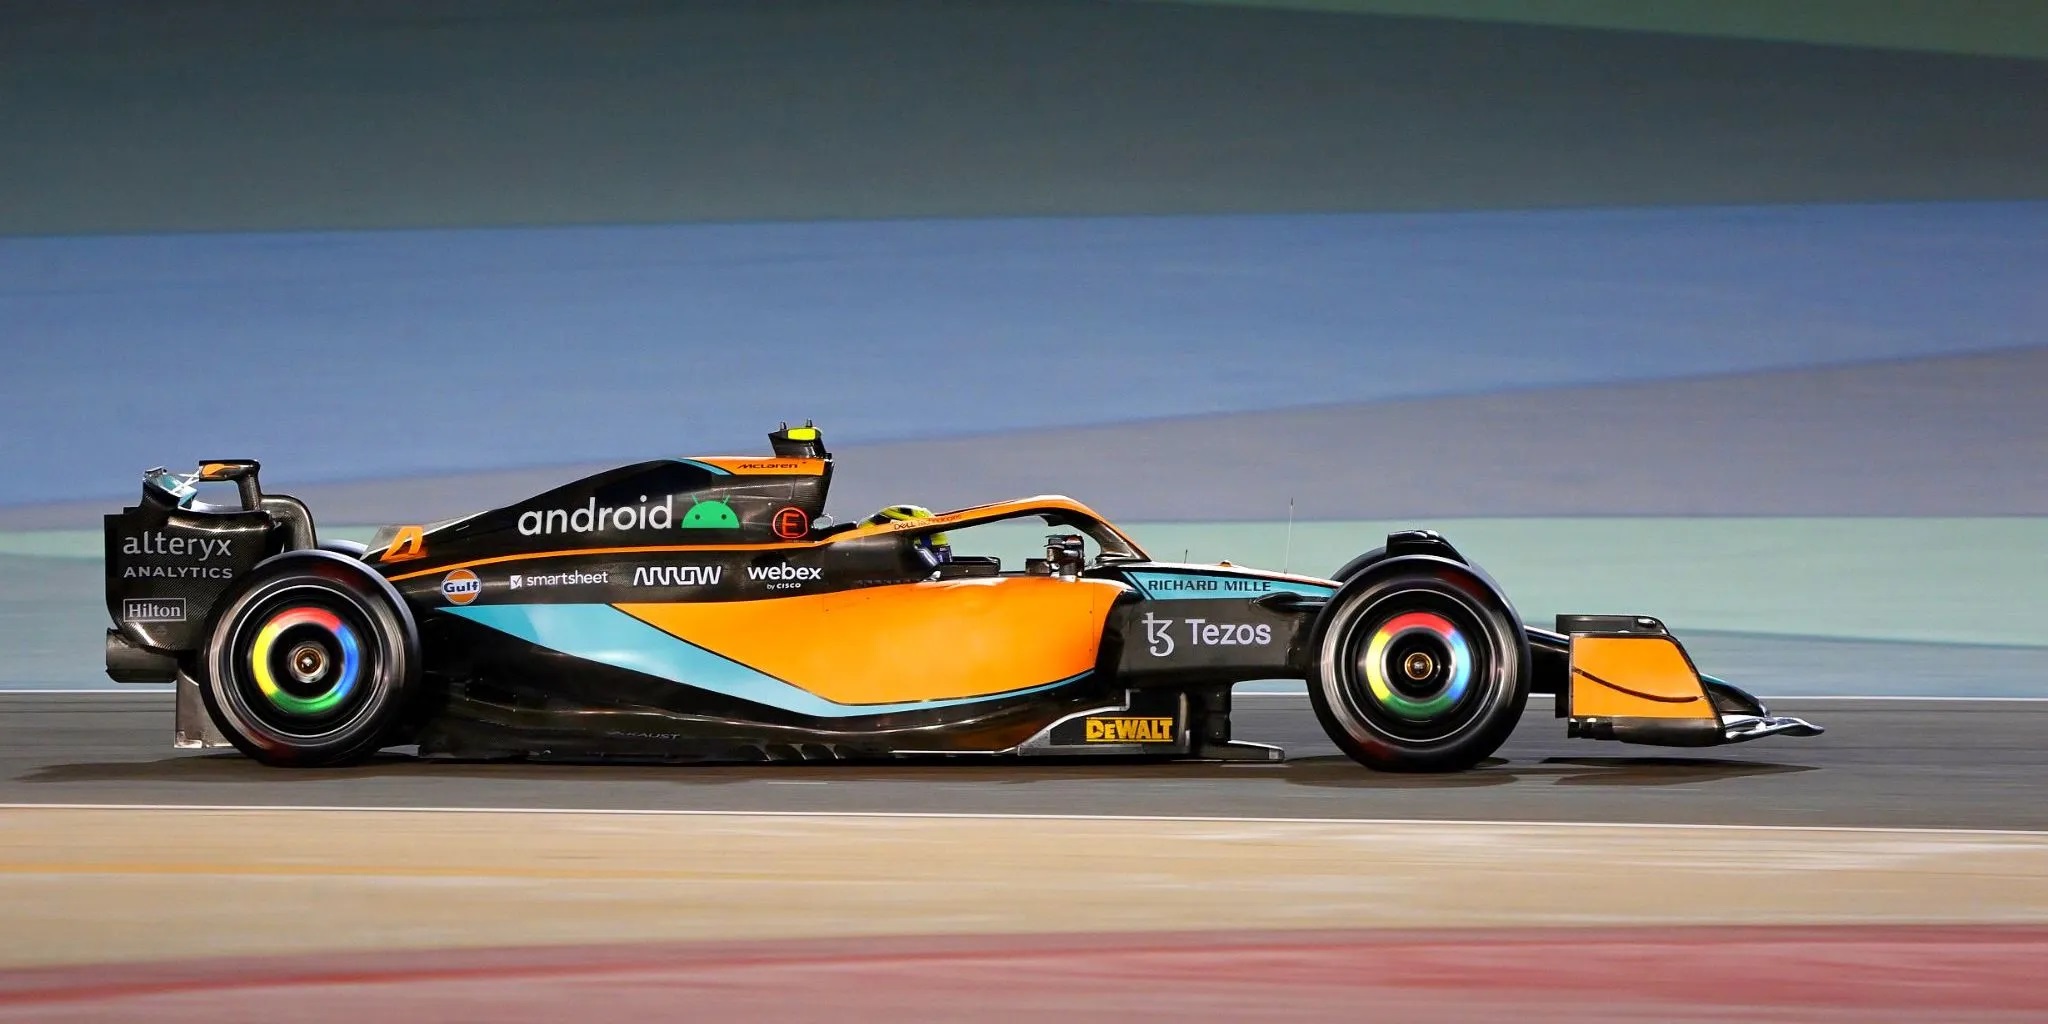 شعارات Android و Chrome على سيارة فريق McLaren